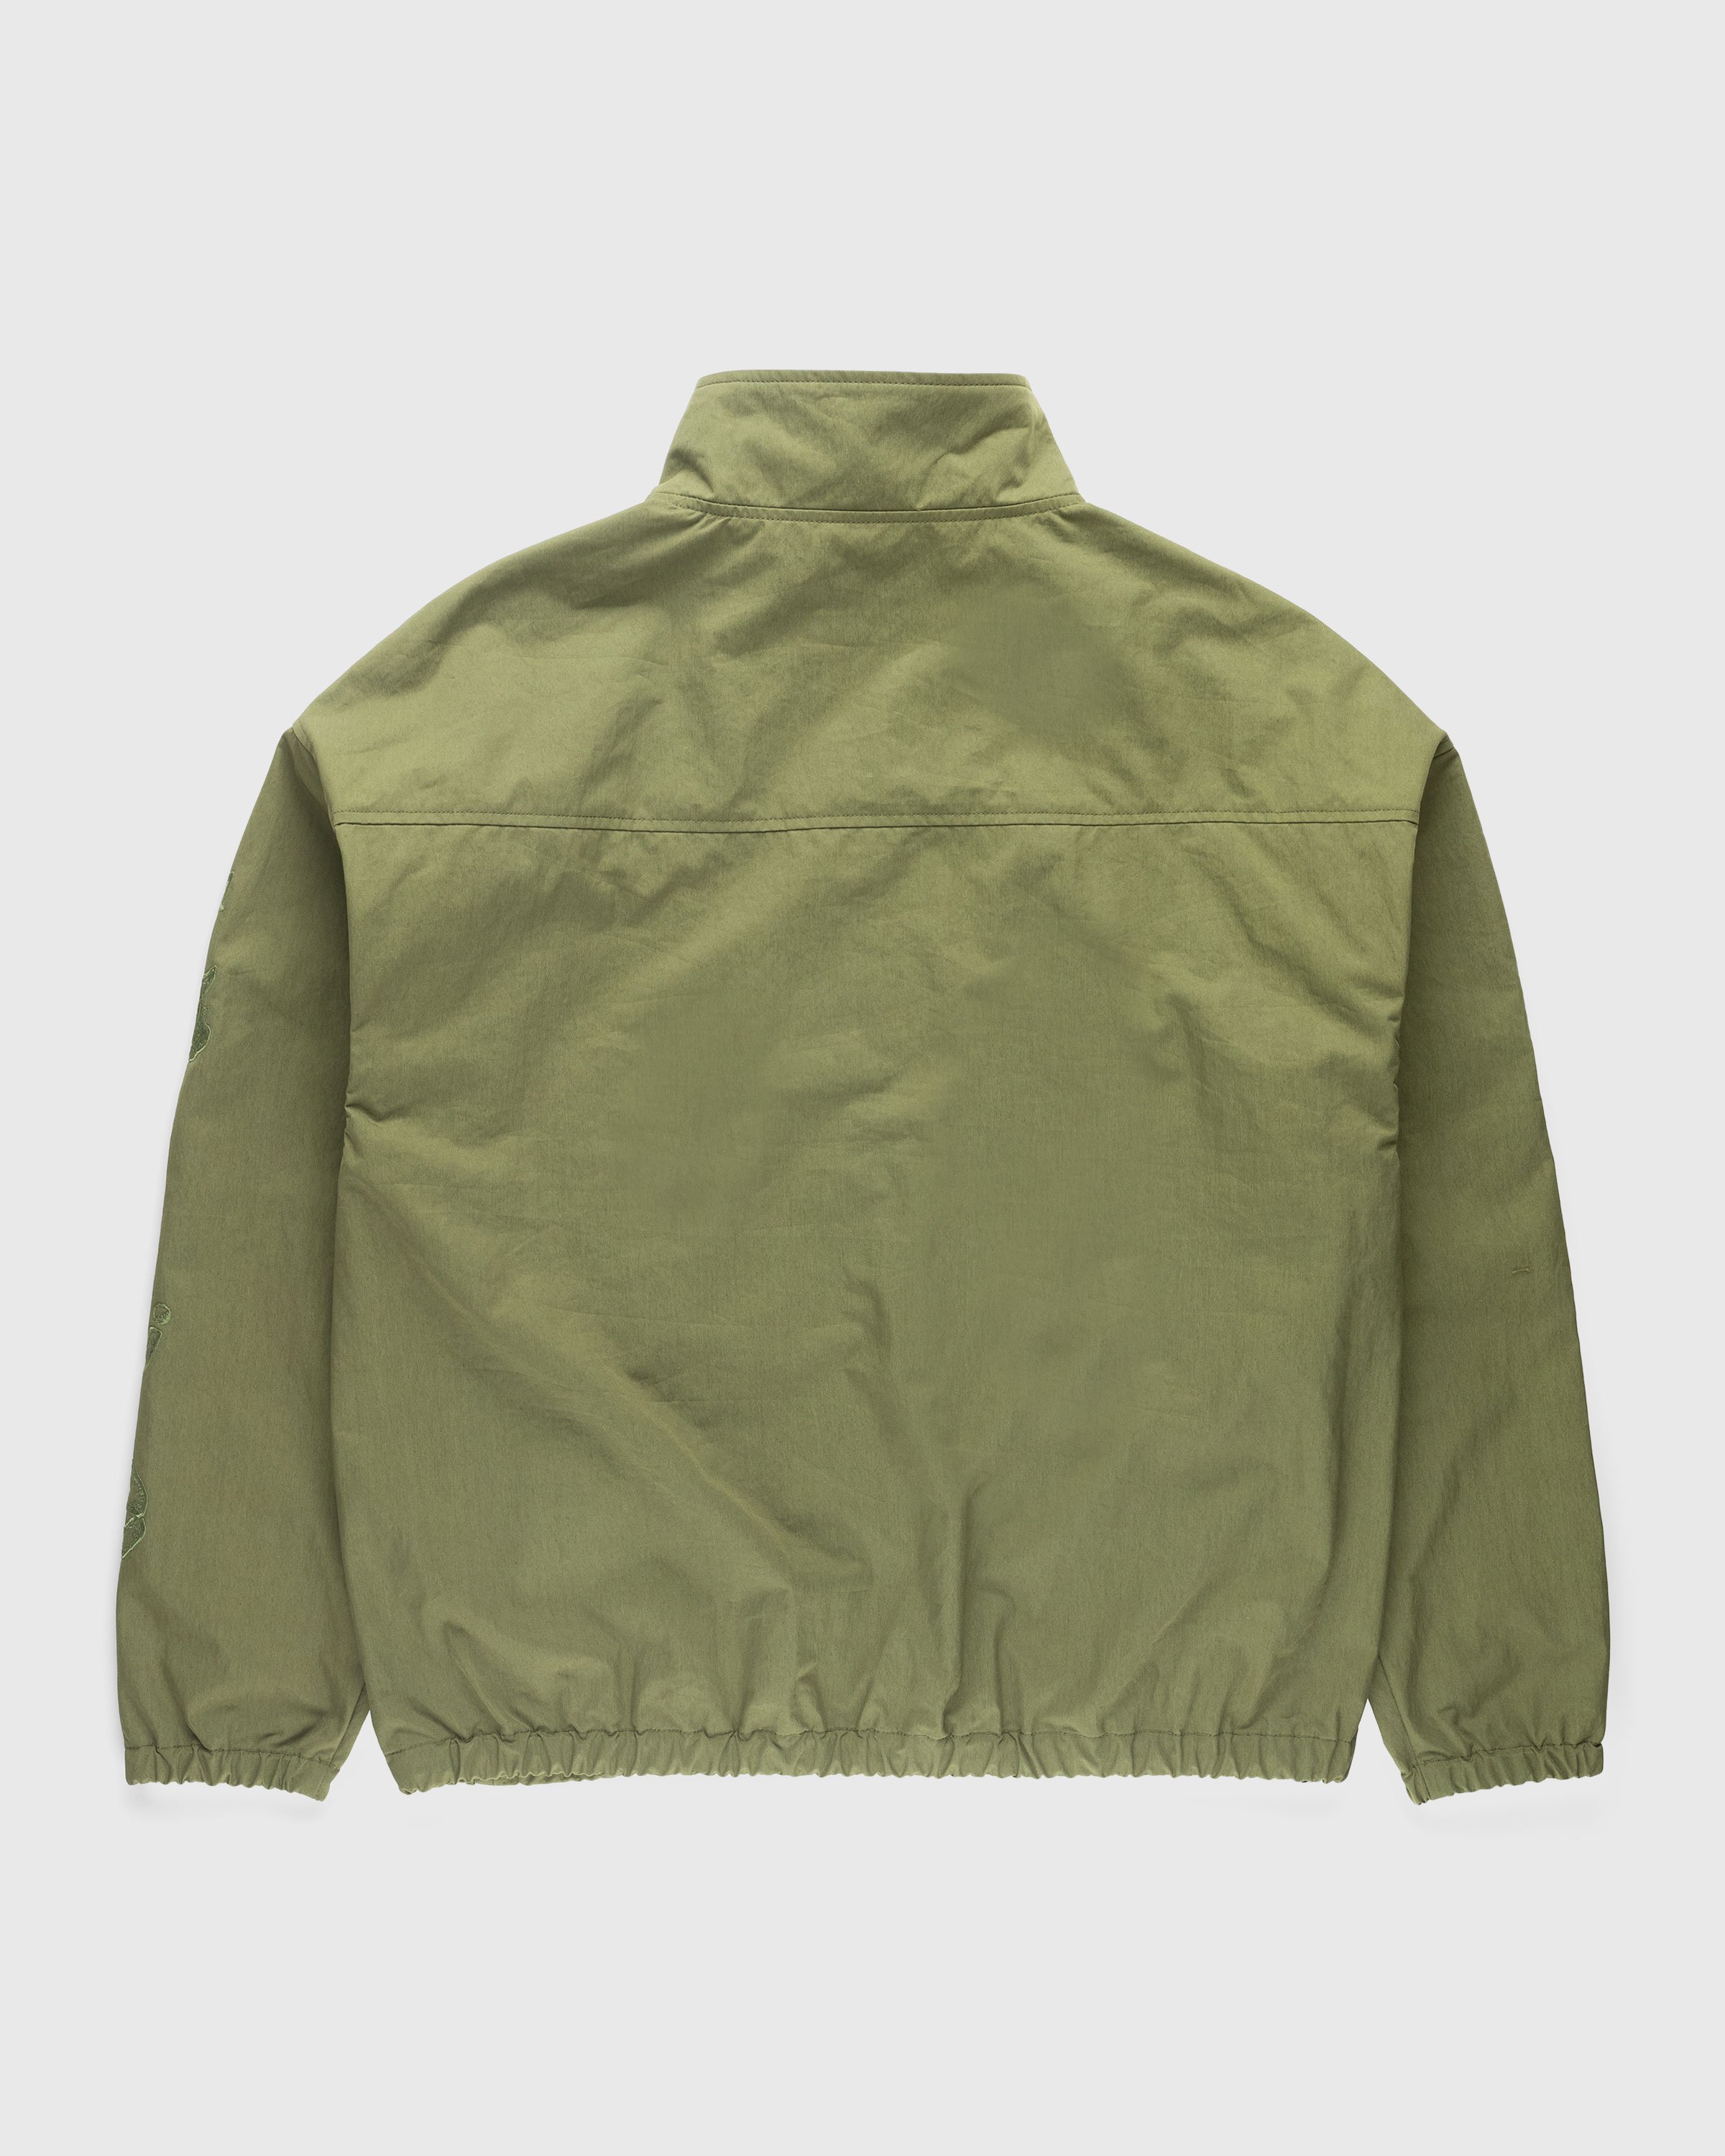 NTS x Highsnobiety - Brushed Nylon Track Jacket Green - Clothing - Green - Image 2